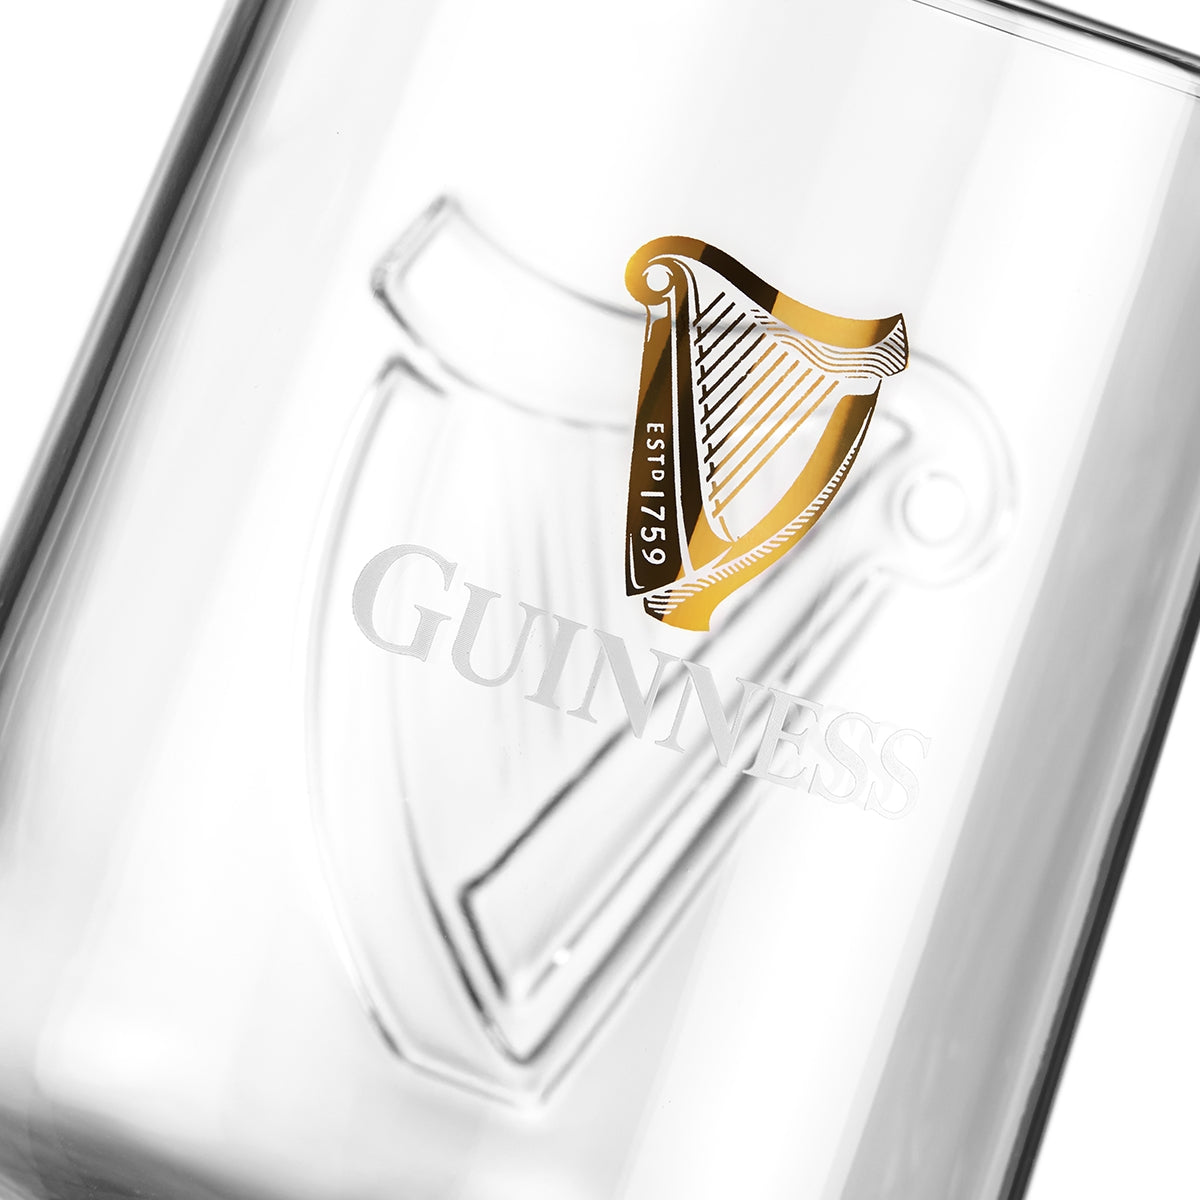 Guinness Embossed Stem Glass 2 Pack, by Guinness.